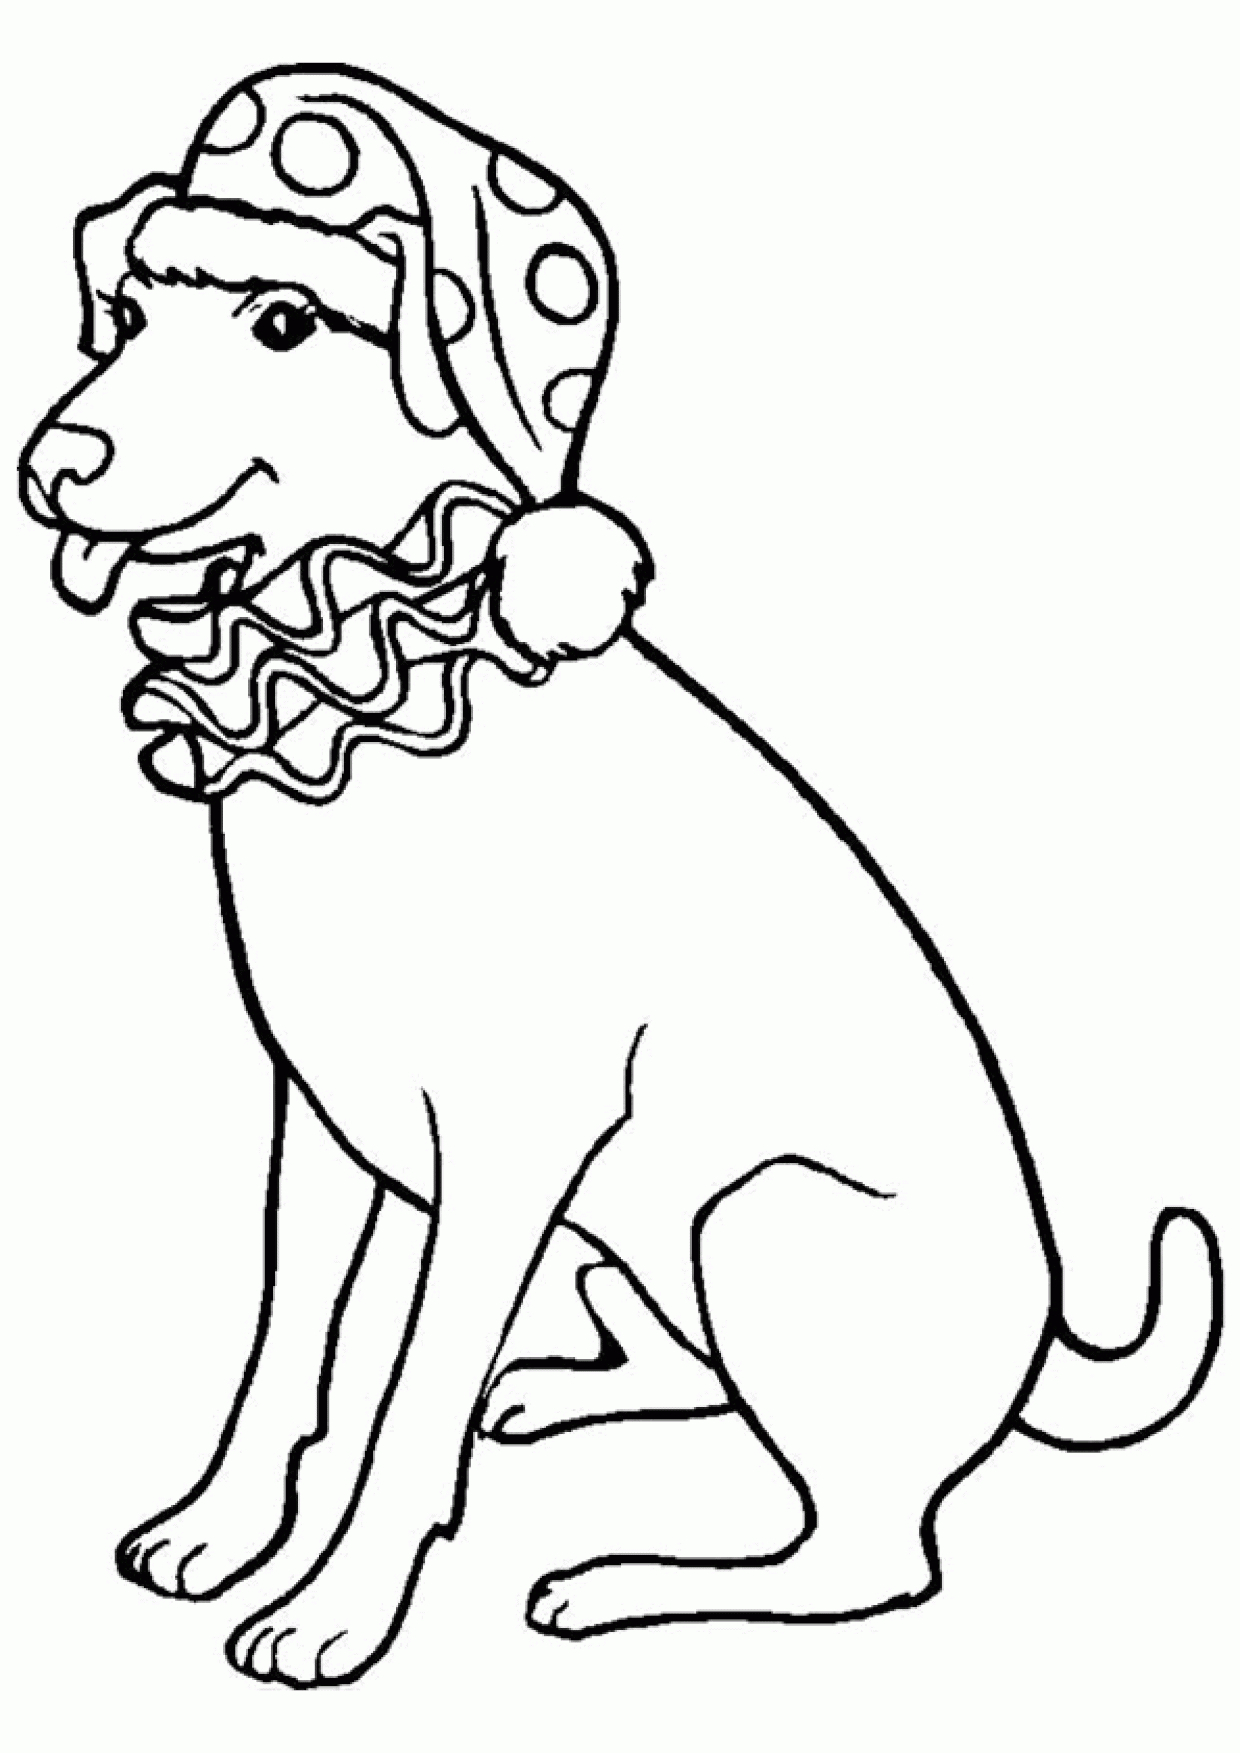 Coloriage Labrador - Dessin Et Coloriage serapportantà Coloriage Labrador